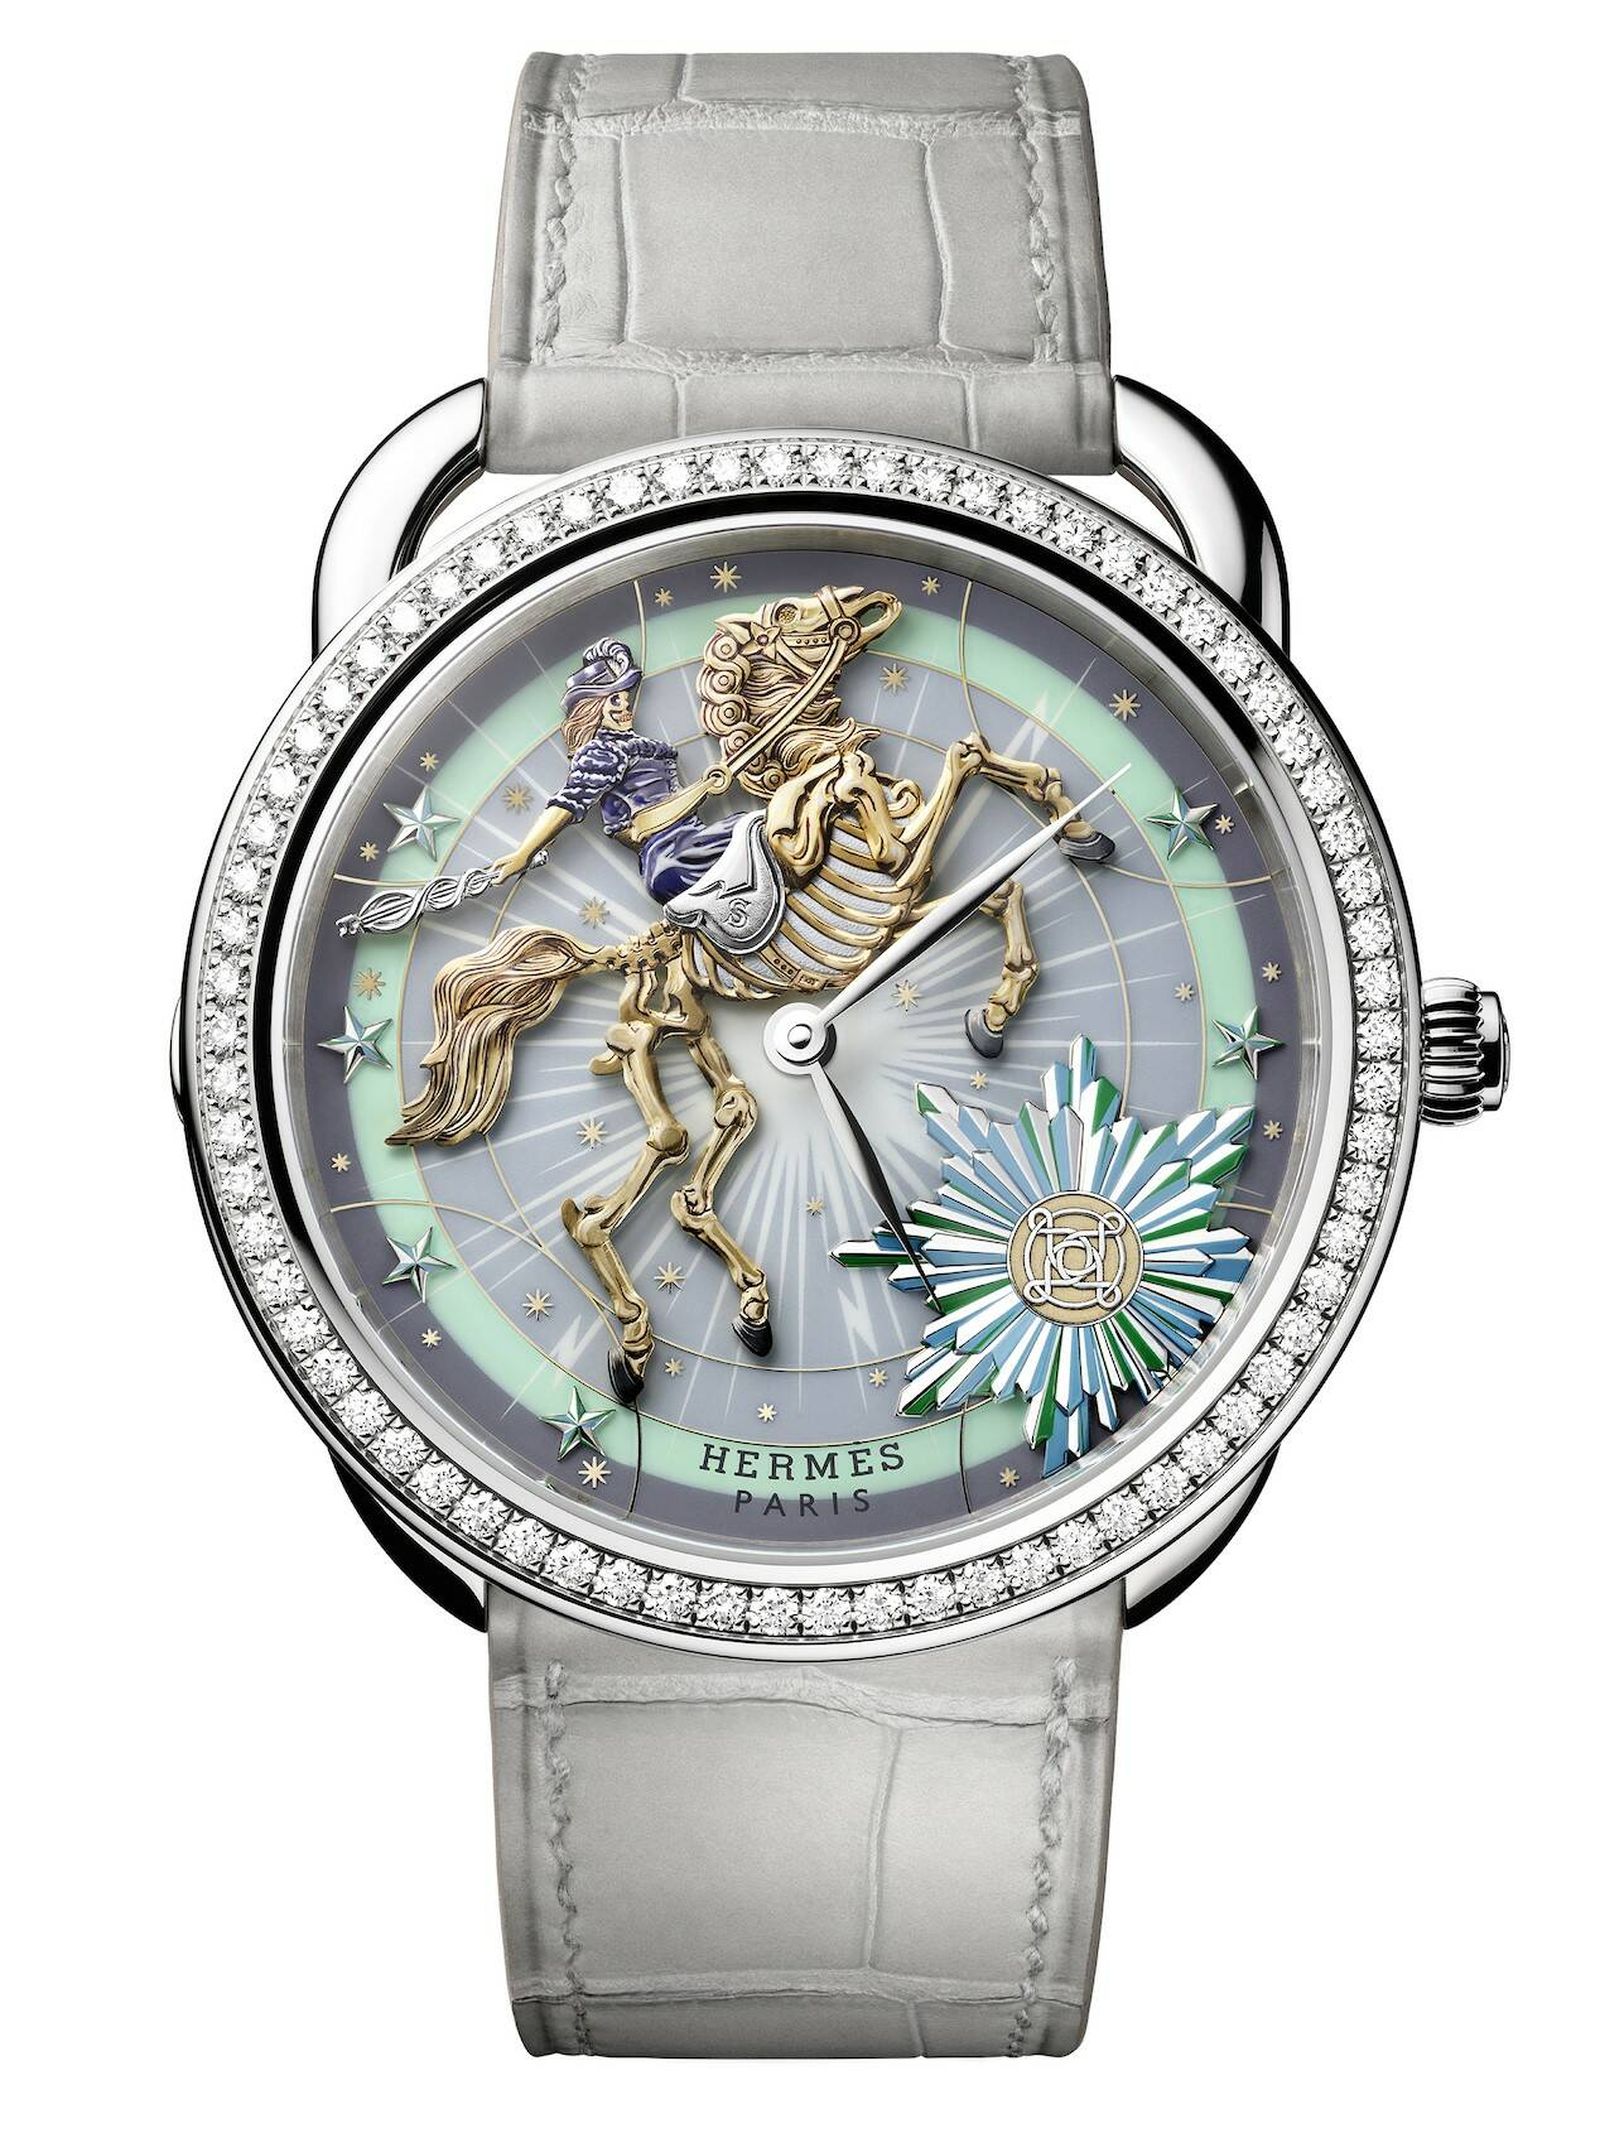 Al reloj Arceau, creado por Henri d'Origny en 1978, le gusta jugar con la metamorfosis. (Cortesía)